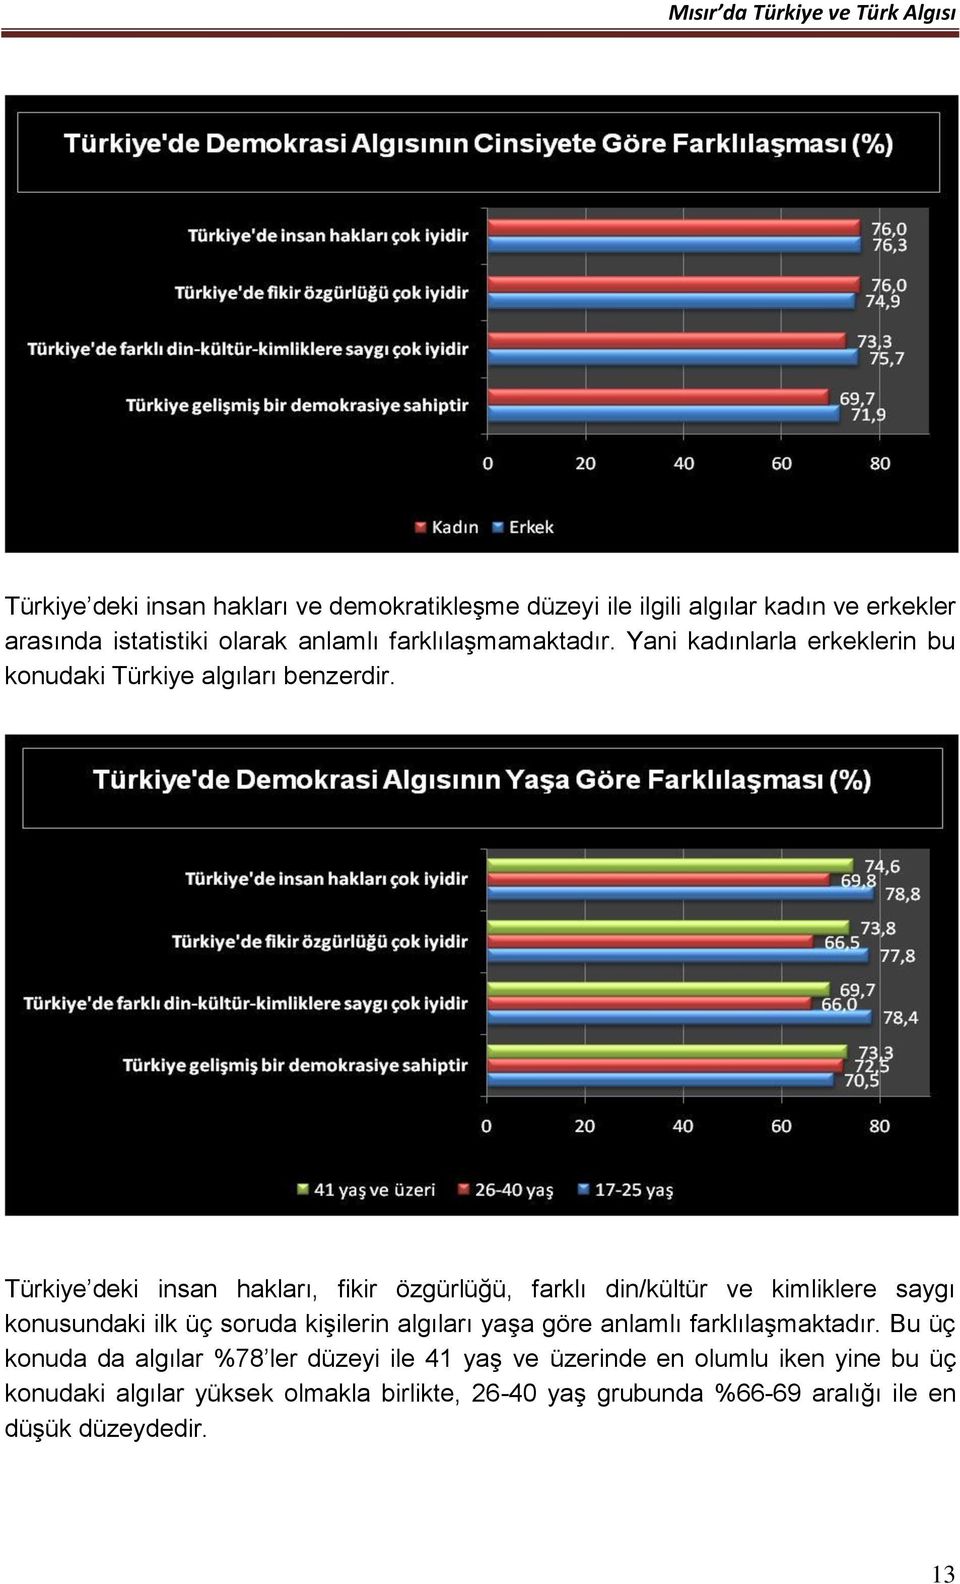 Türkiye deki insan hakları, fikir özgürlüğü, farklı din/kültür ve kimliklere saygı konusundaki ilk üç soruda kişilerin algıları yaşa göre